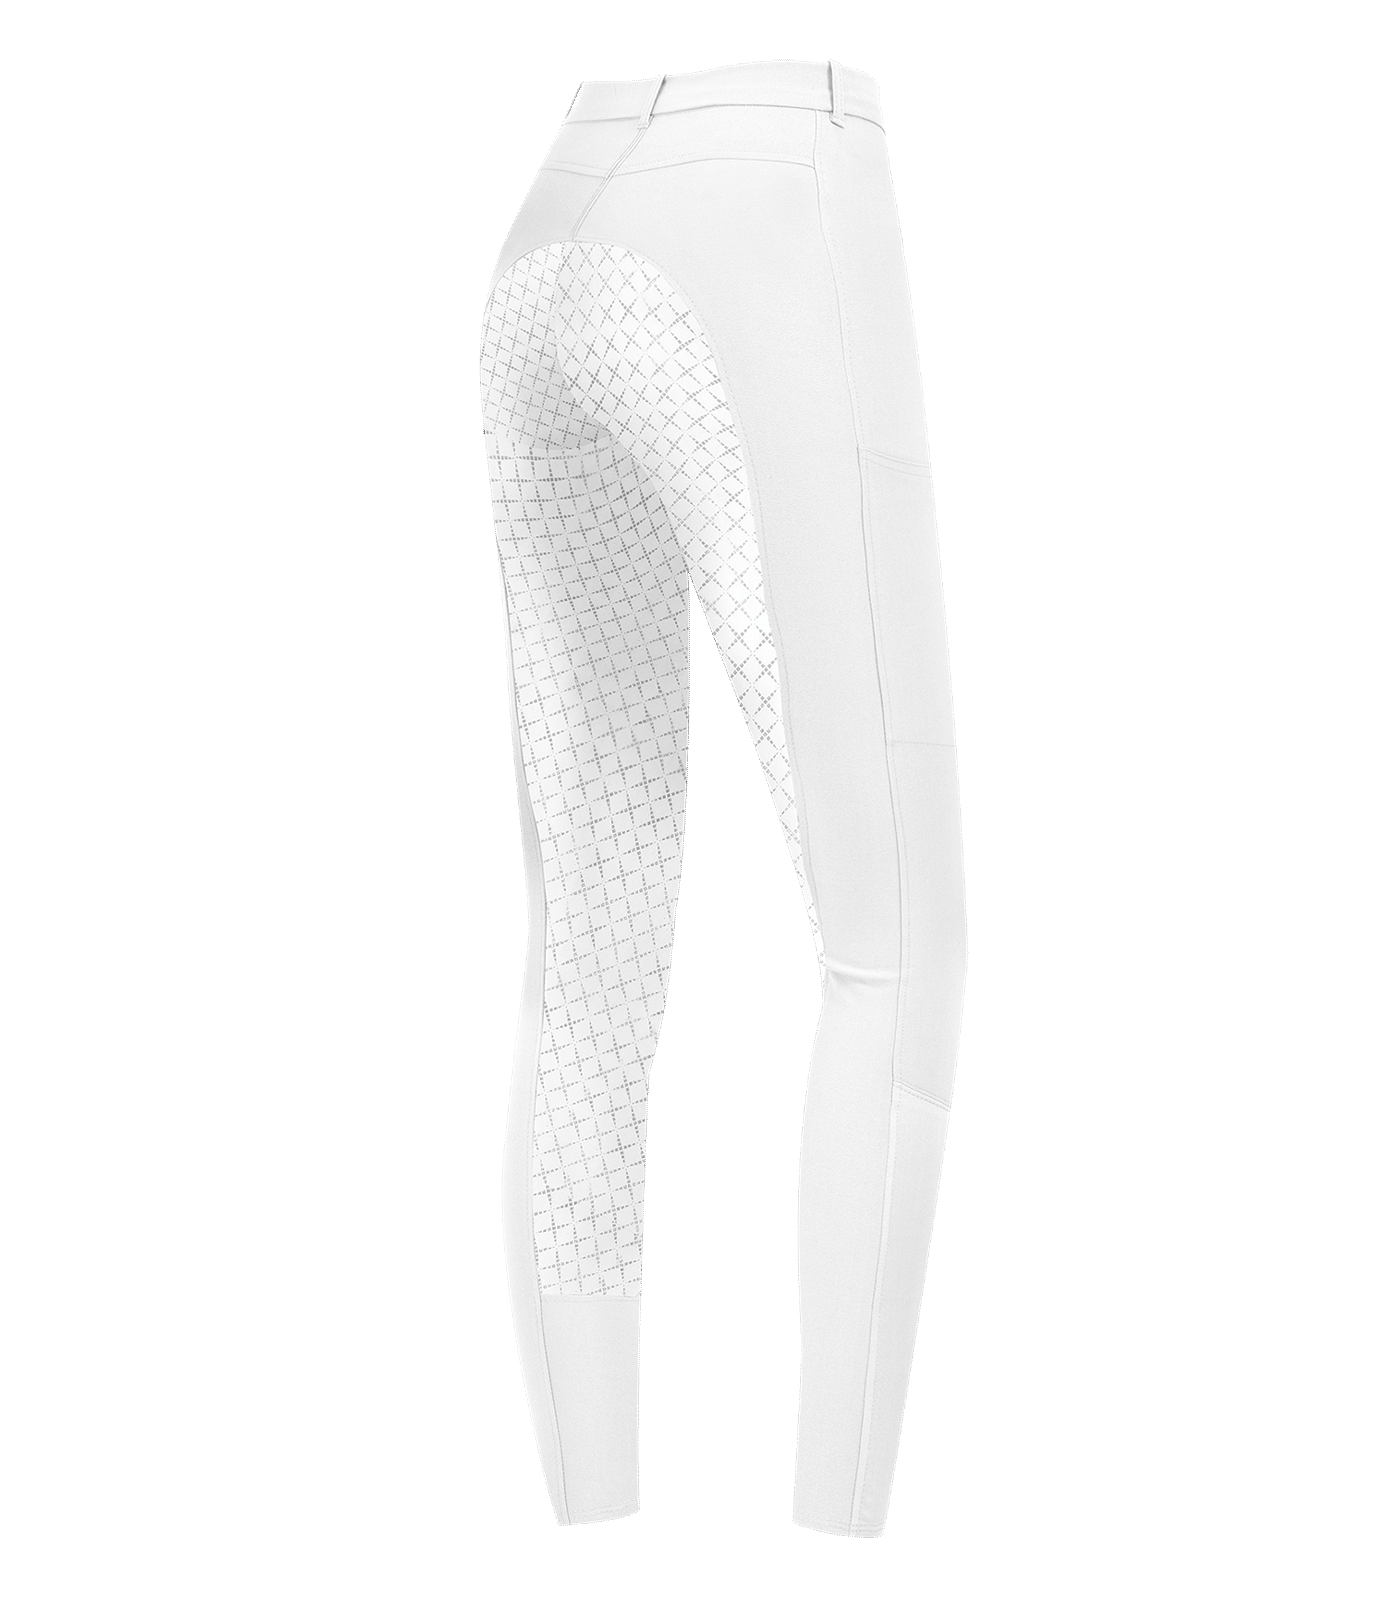 Pantaloni da equitazione Micro Sport con inserti in silicone